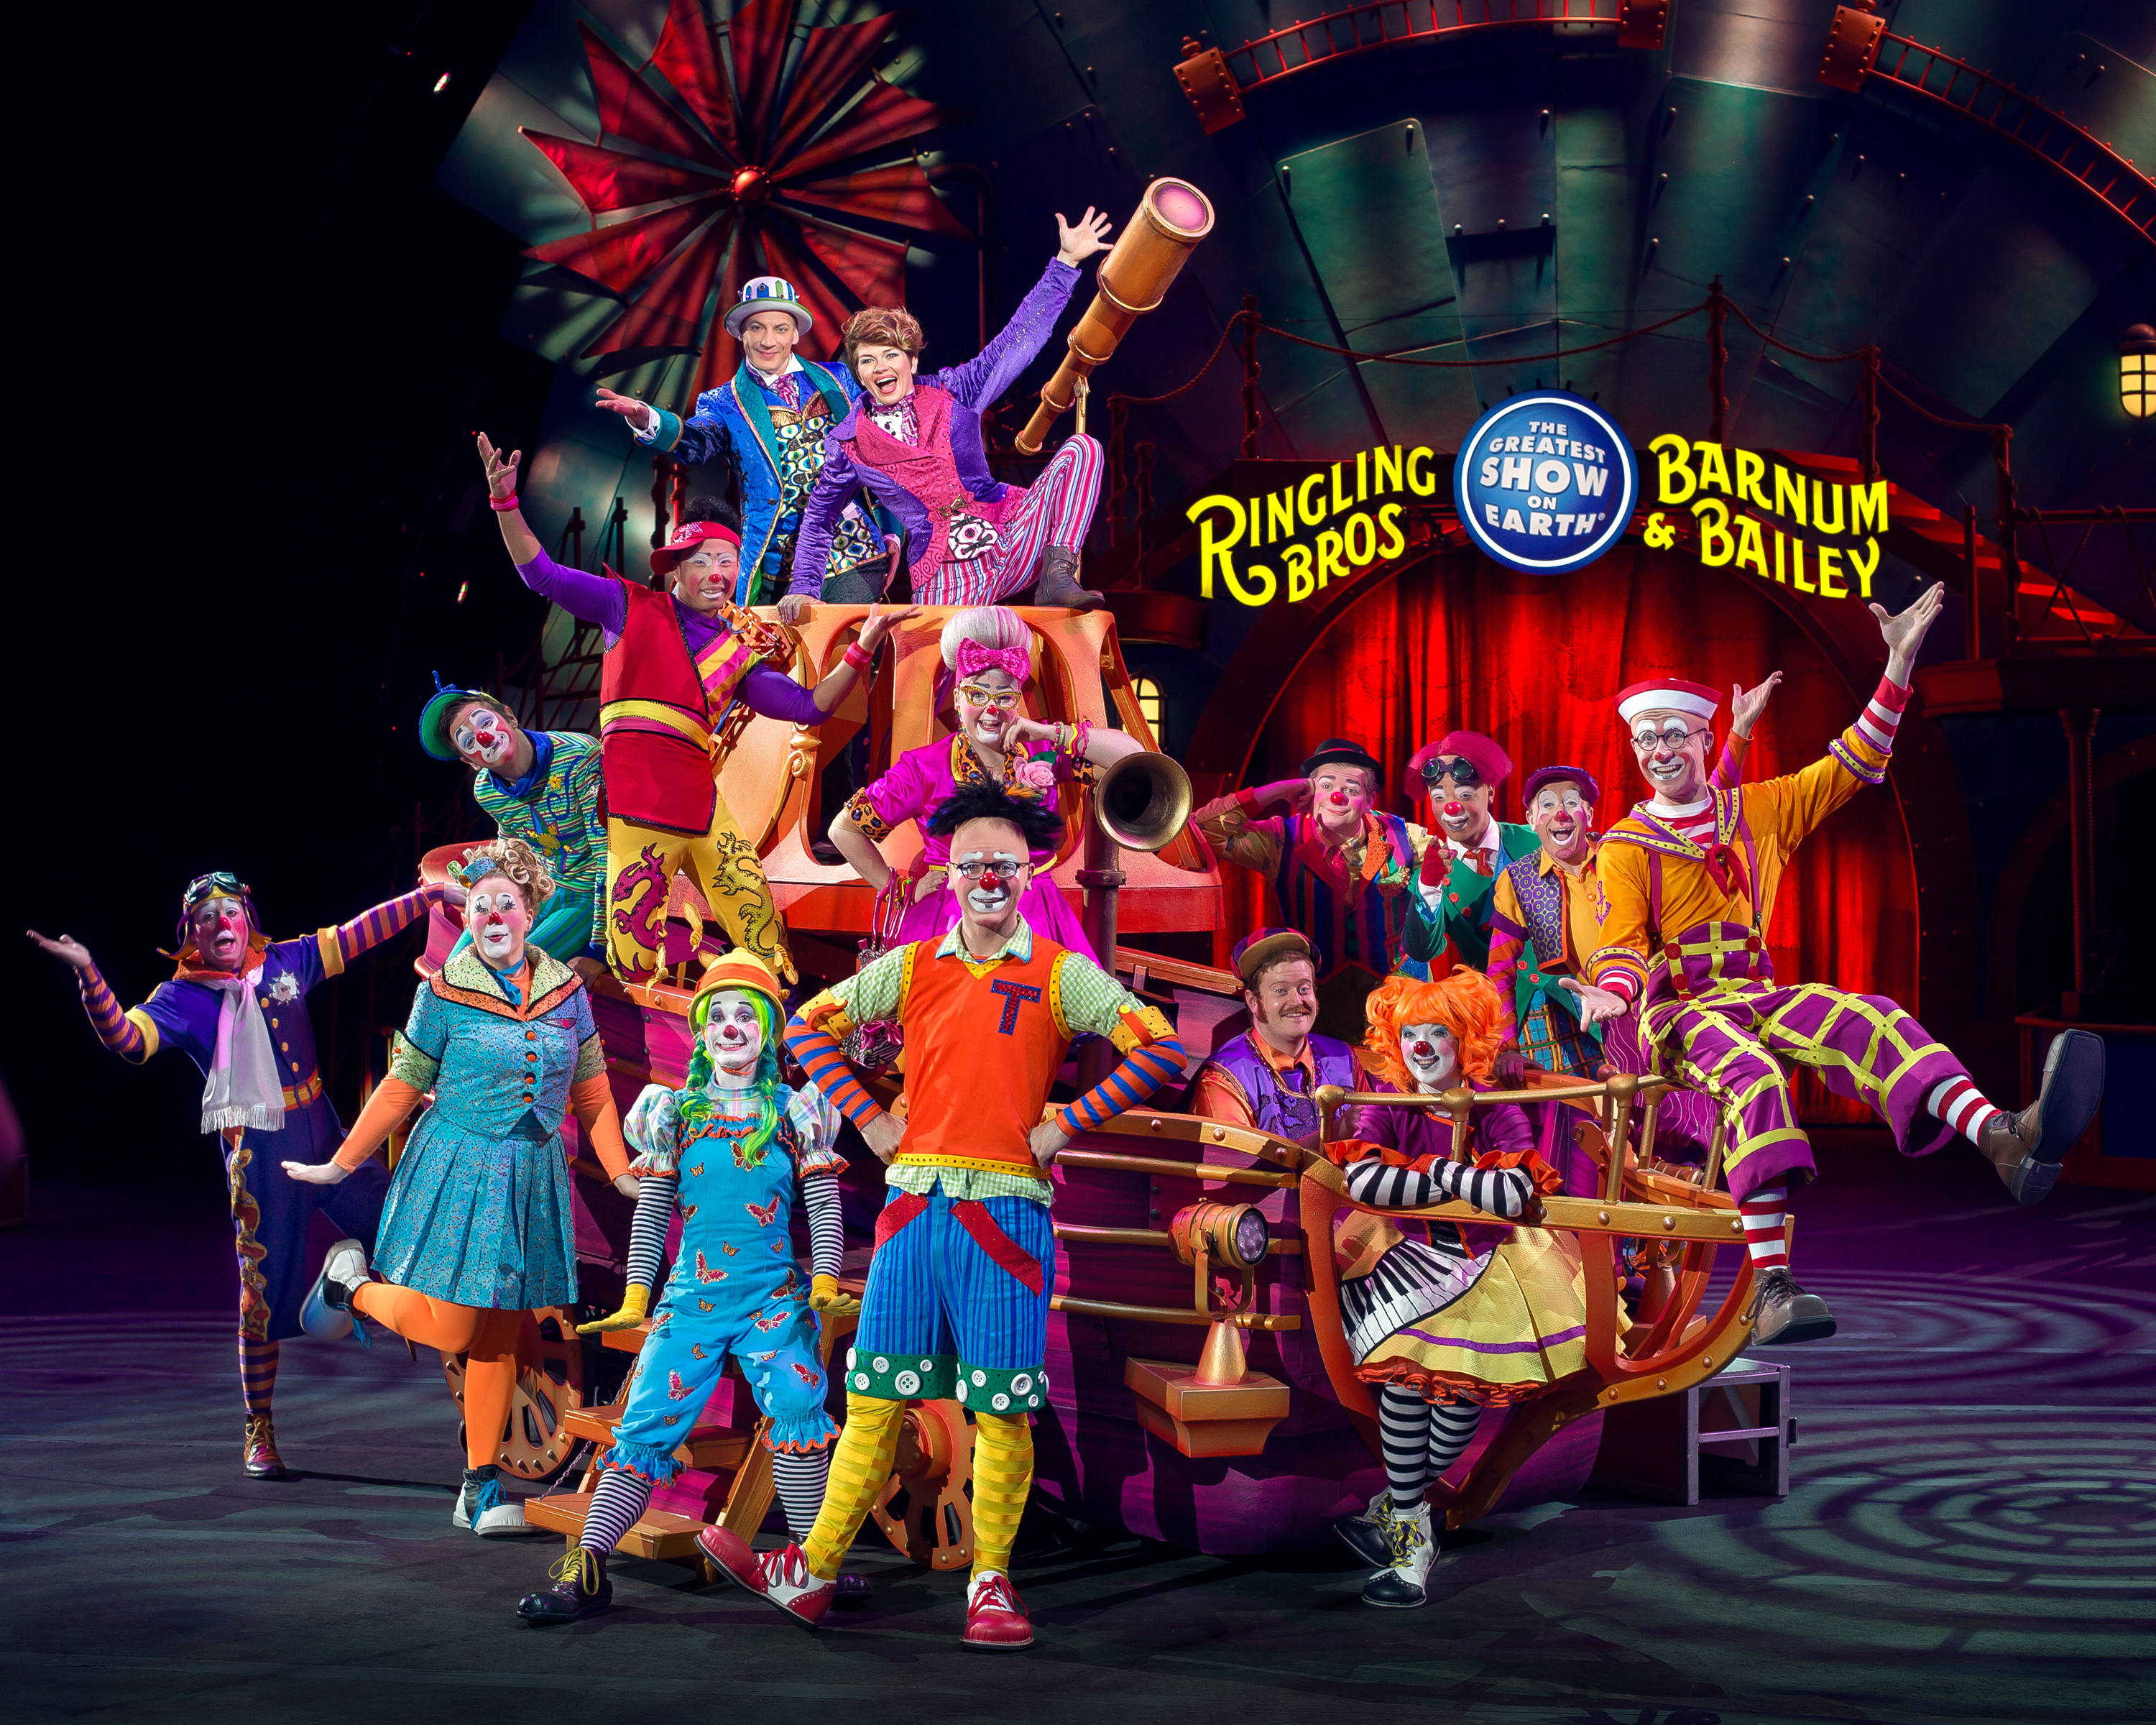 ¡Emociones Extremas, Animales Exóticos y Artistas Extraordinarios Ringling Bros. and Barnum & Bailey® Presenta Circus XTREME